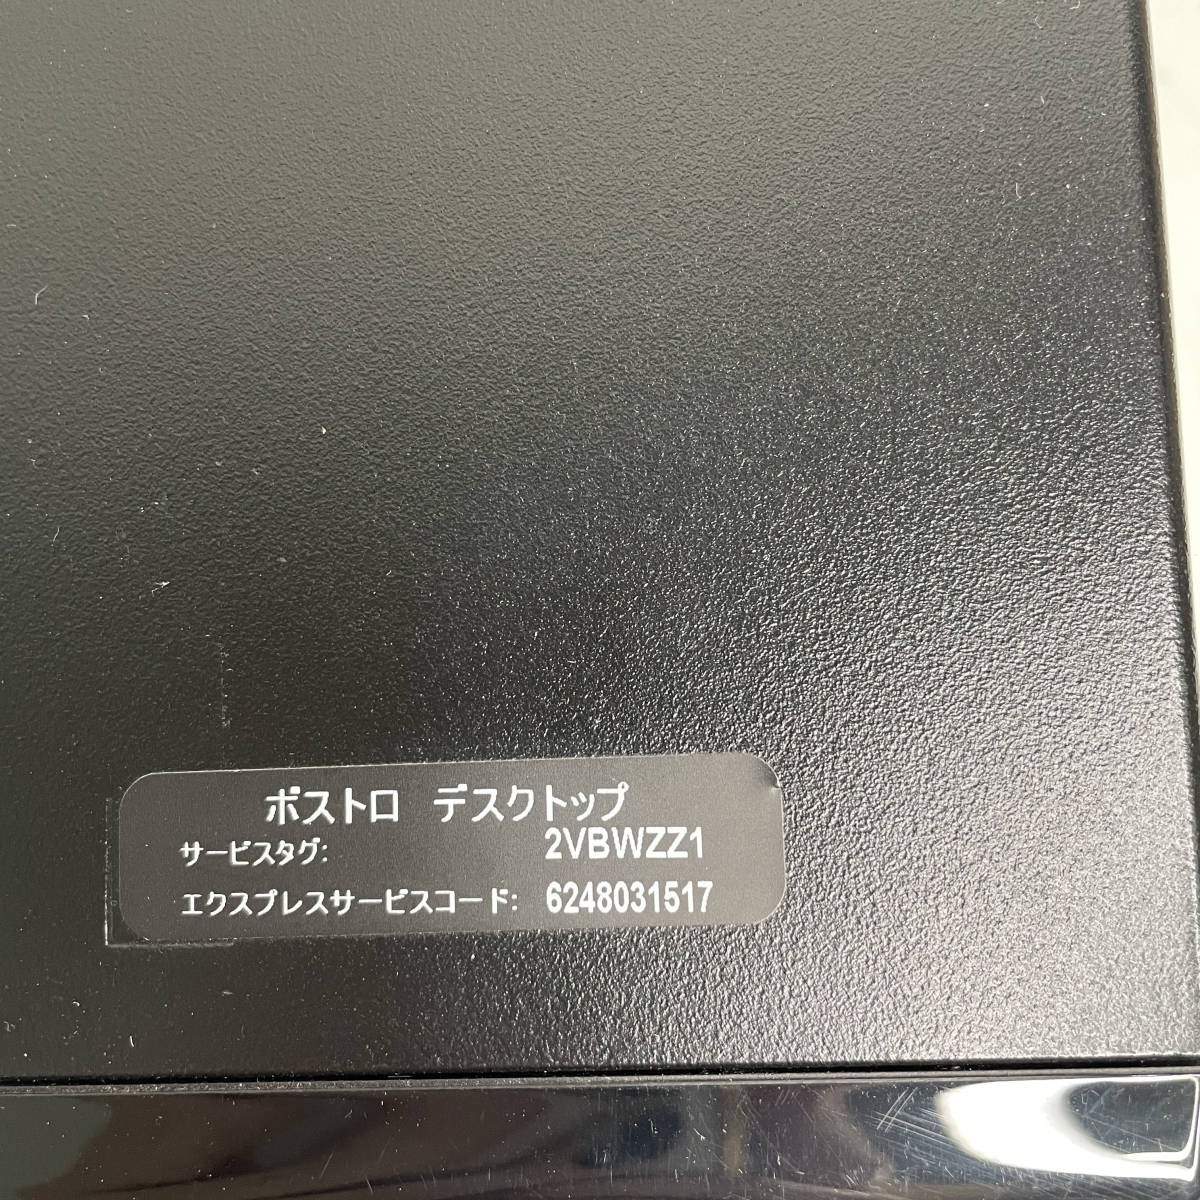 中古☆DELL デスクトップパソコン Vostro 270S Win10Home Pentium G2030 3.0GHz メモリ6GB HDD500GB DVDスーパーマルチ 動作良好 送料無料_画像3